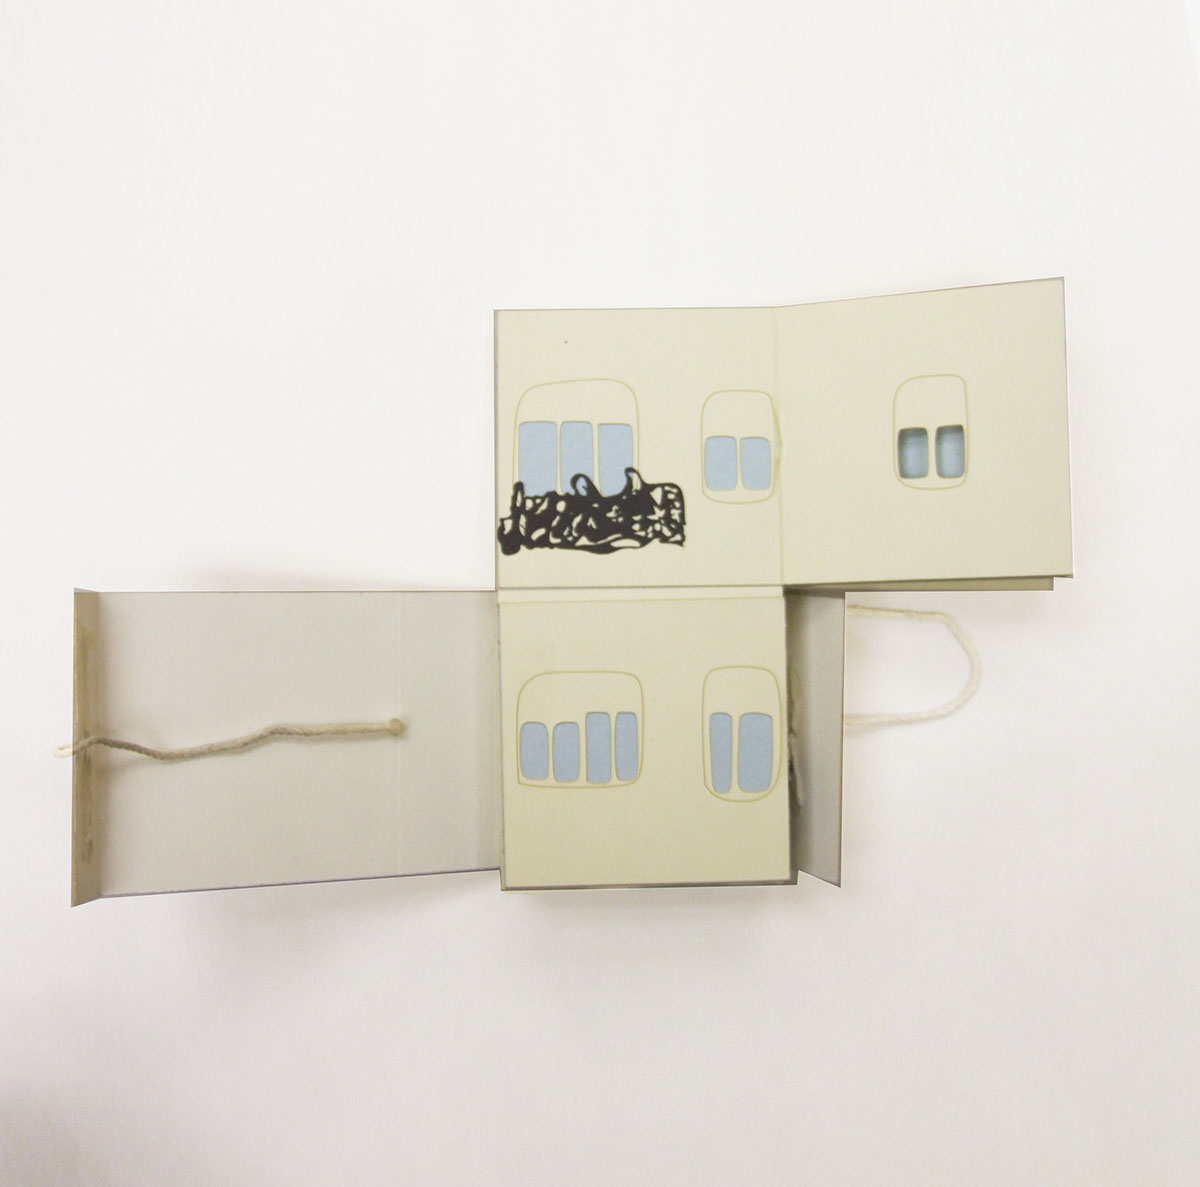 Bookbinding Gaudi printmaking book design sculptural book 3D handmaking